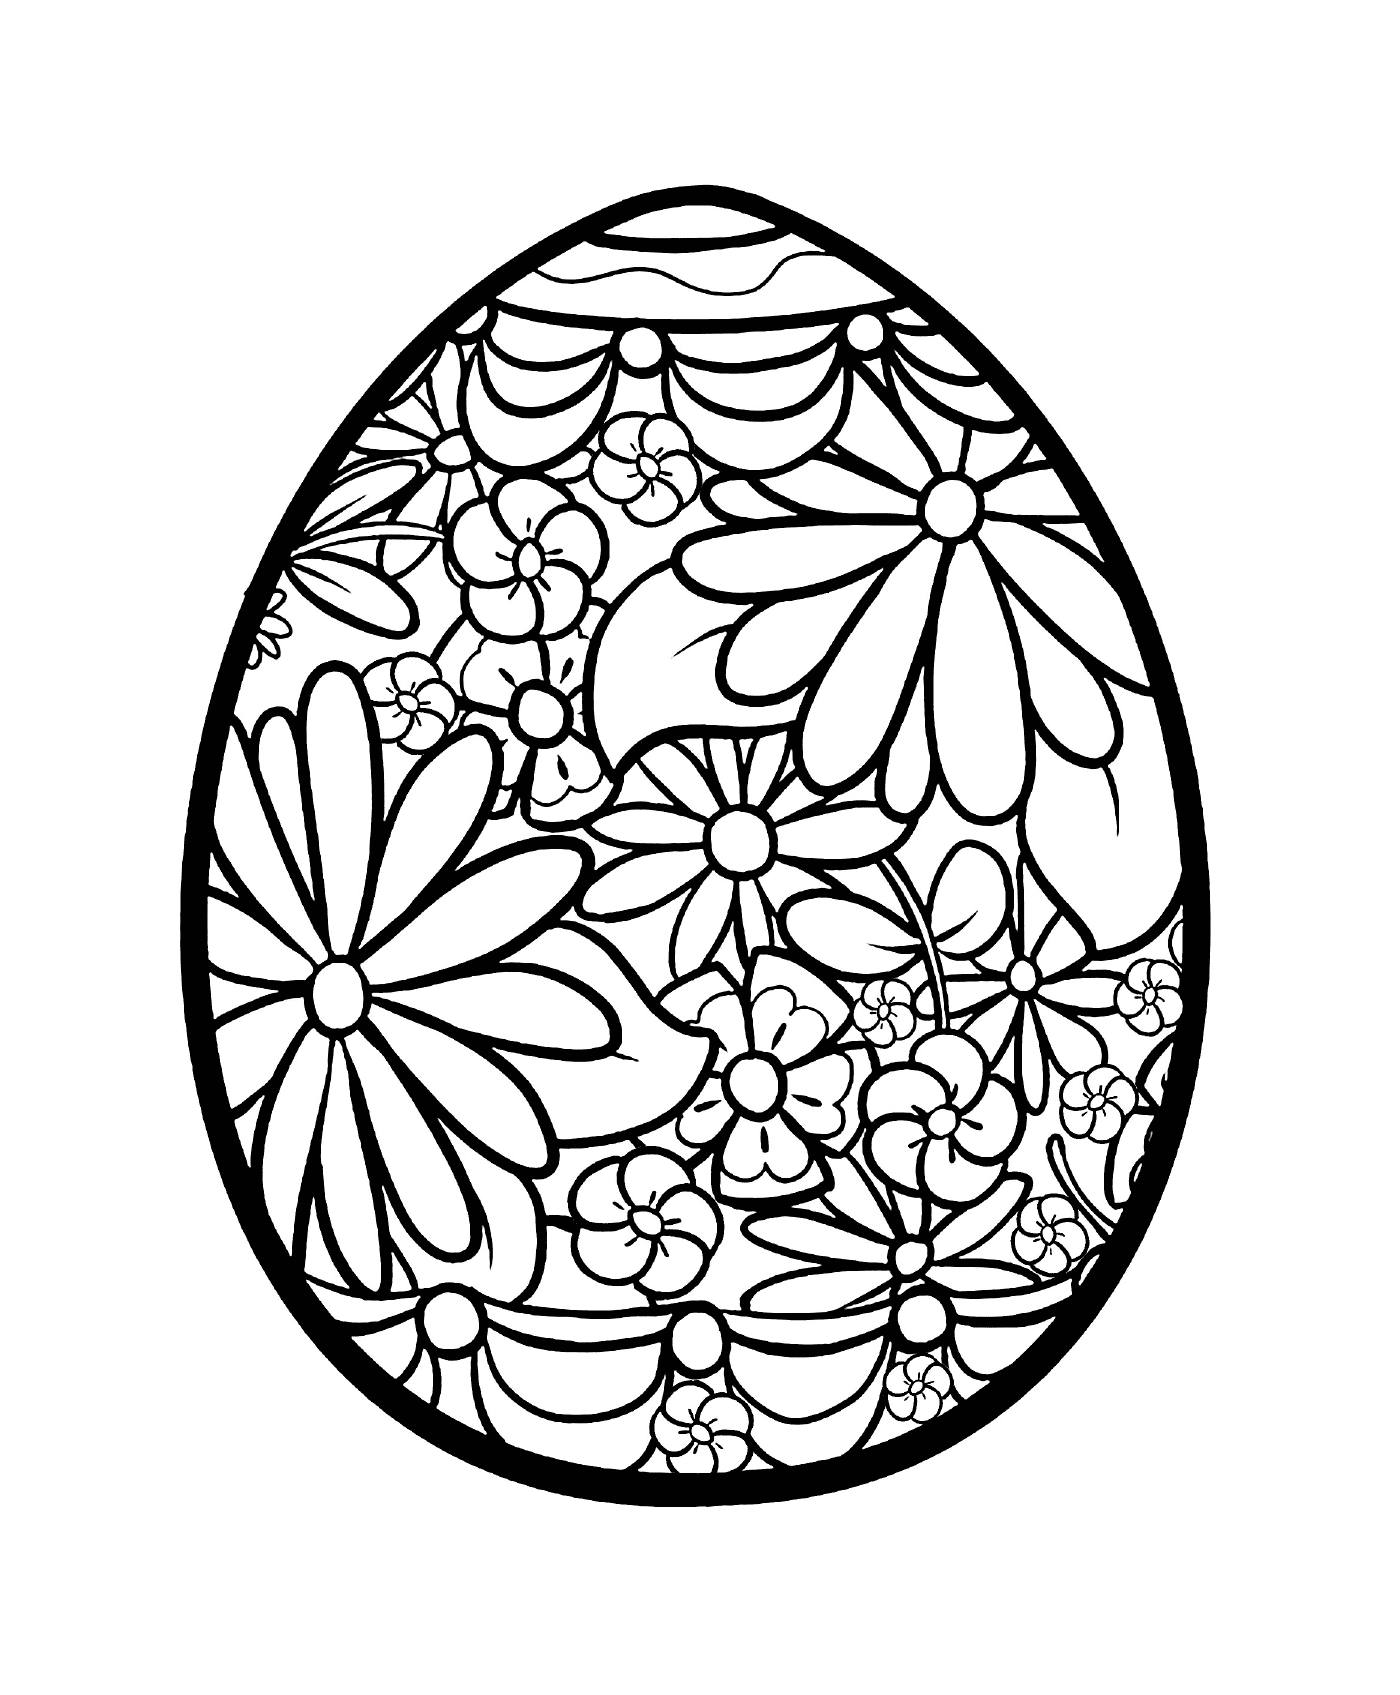  Huevo de Pascua 2019 con flores 